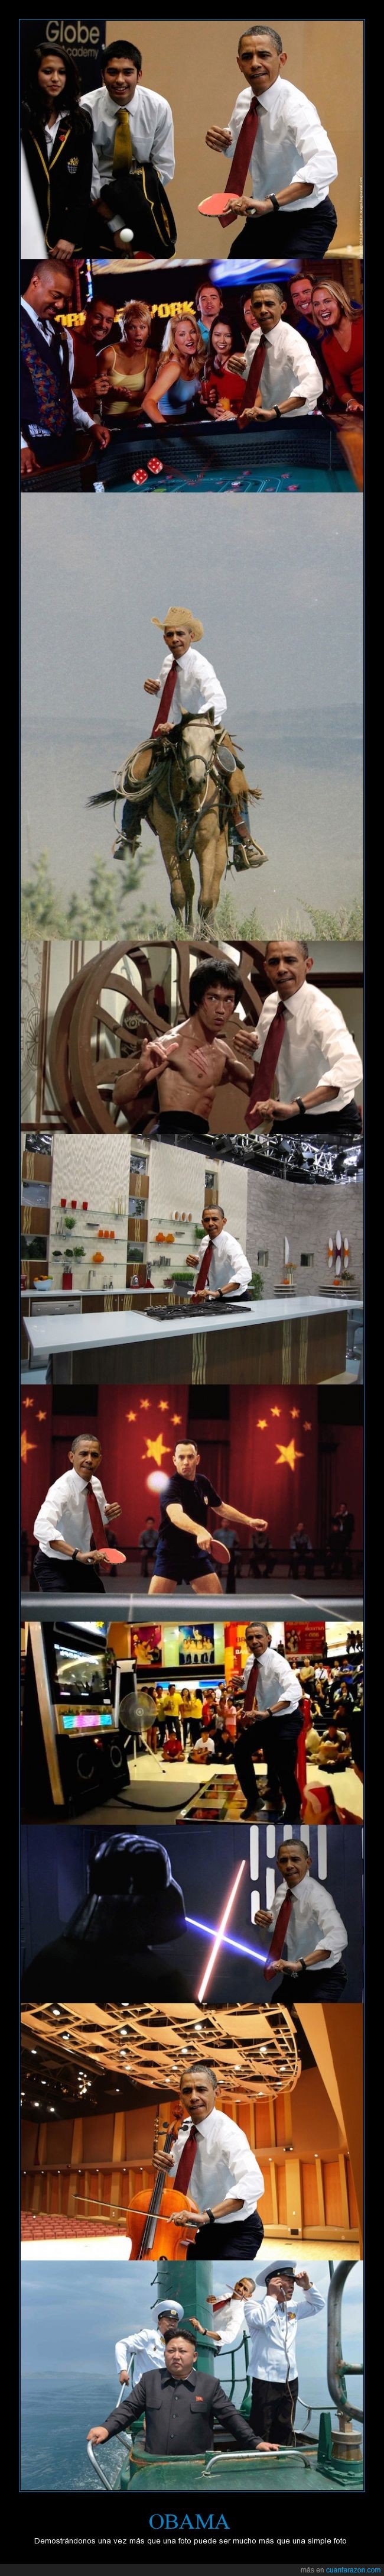 barack,cello,chop,cocina,corea,montaje,obama,ping pong,presidente